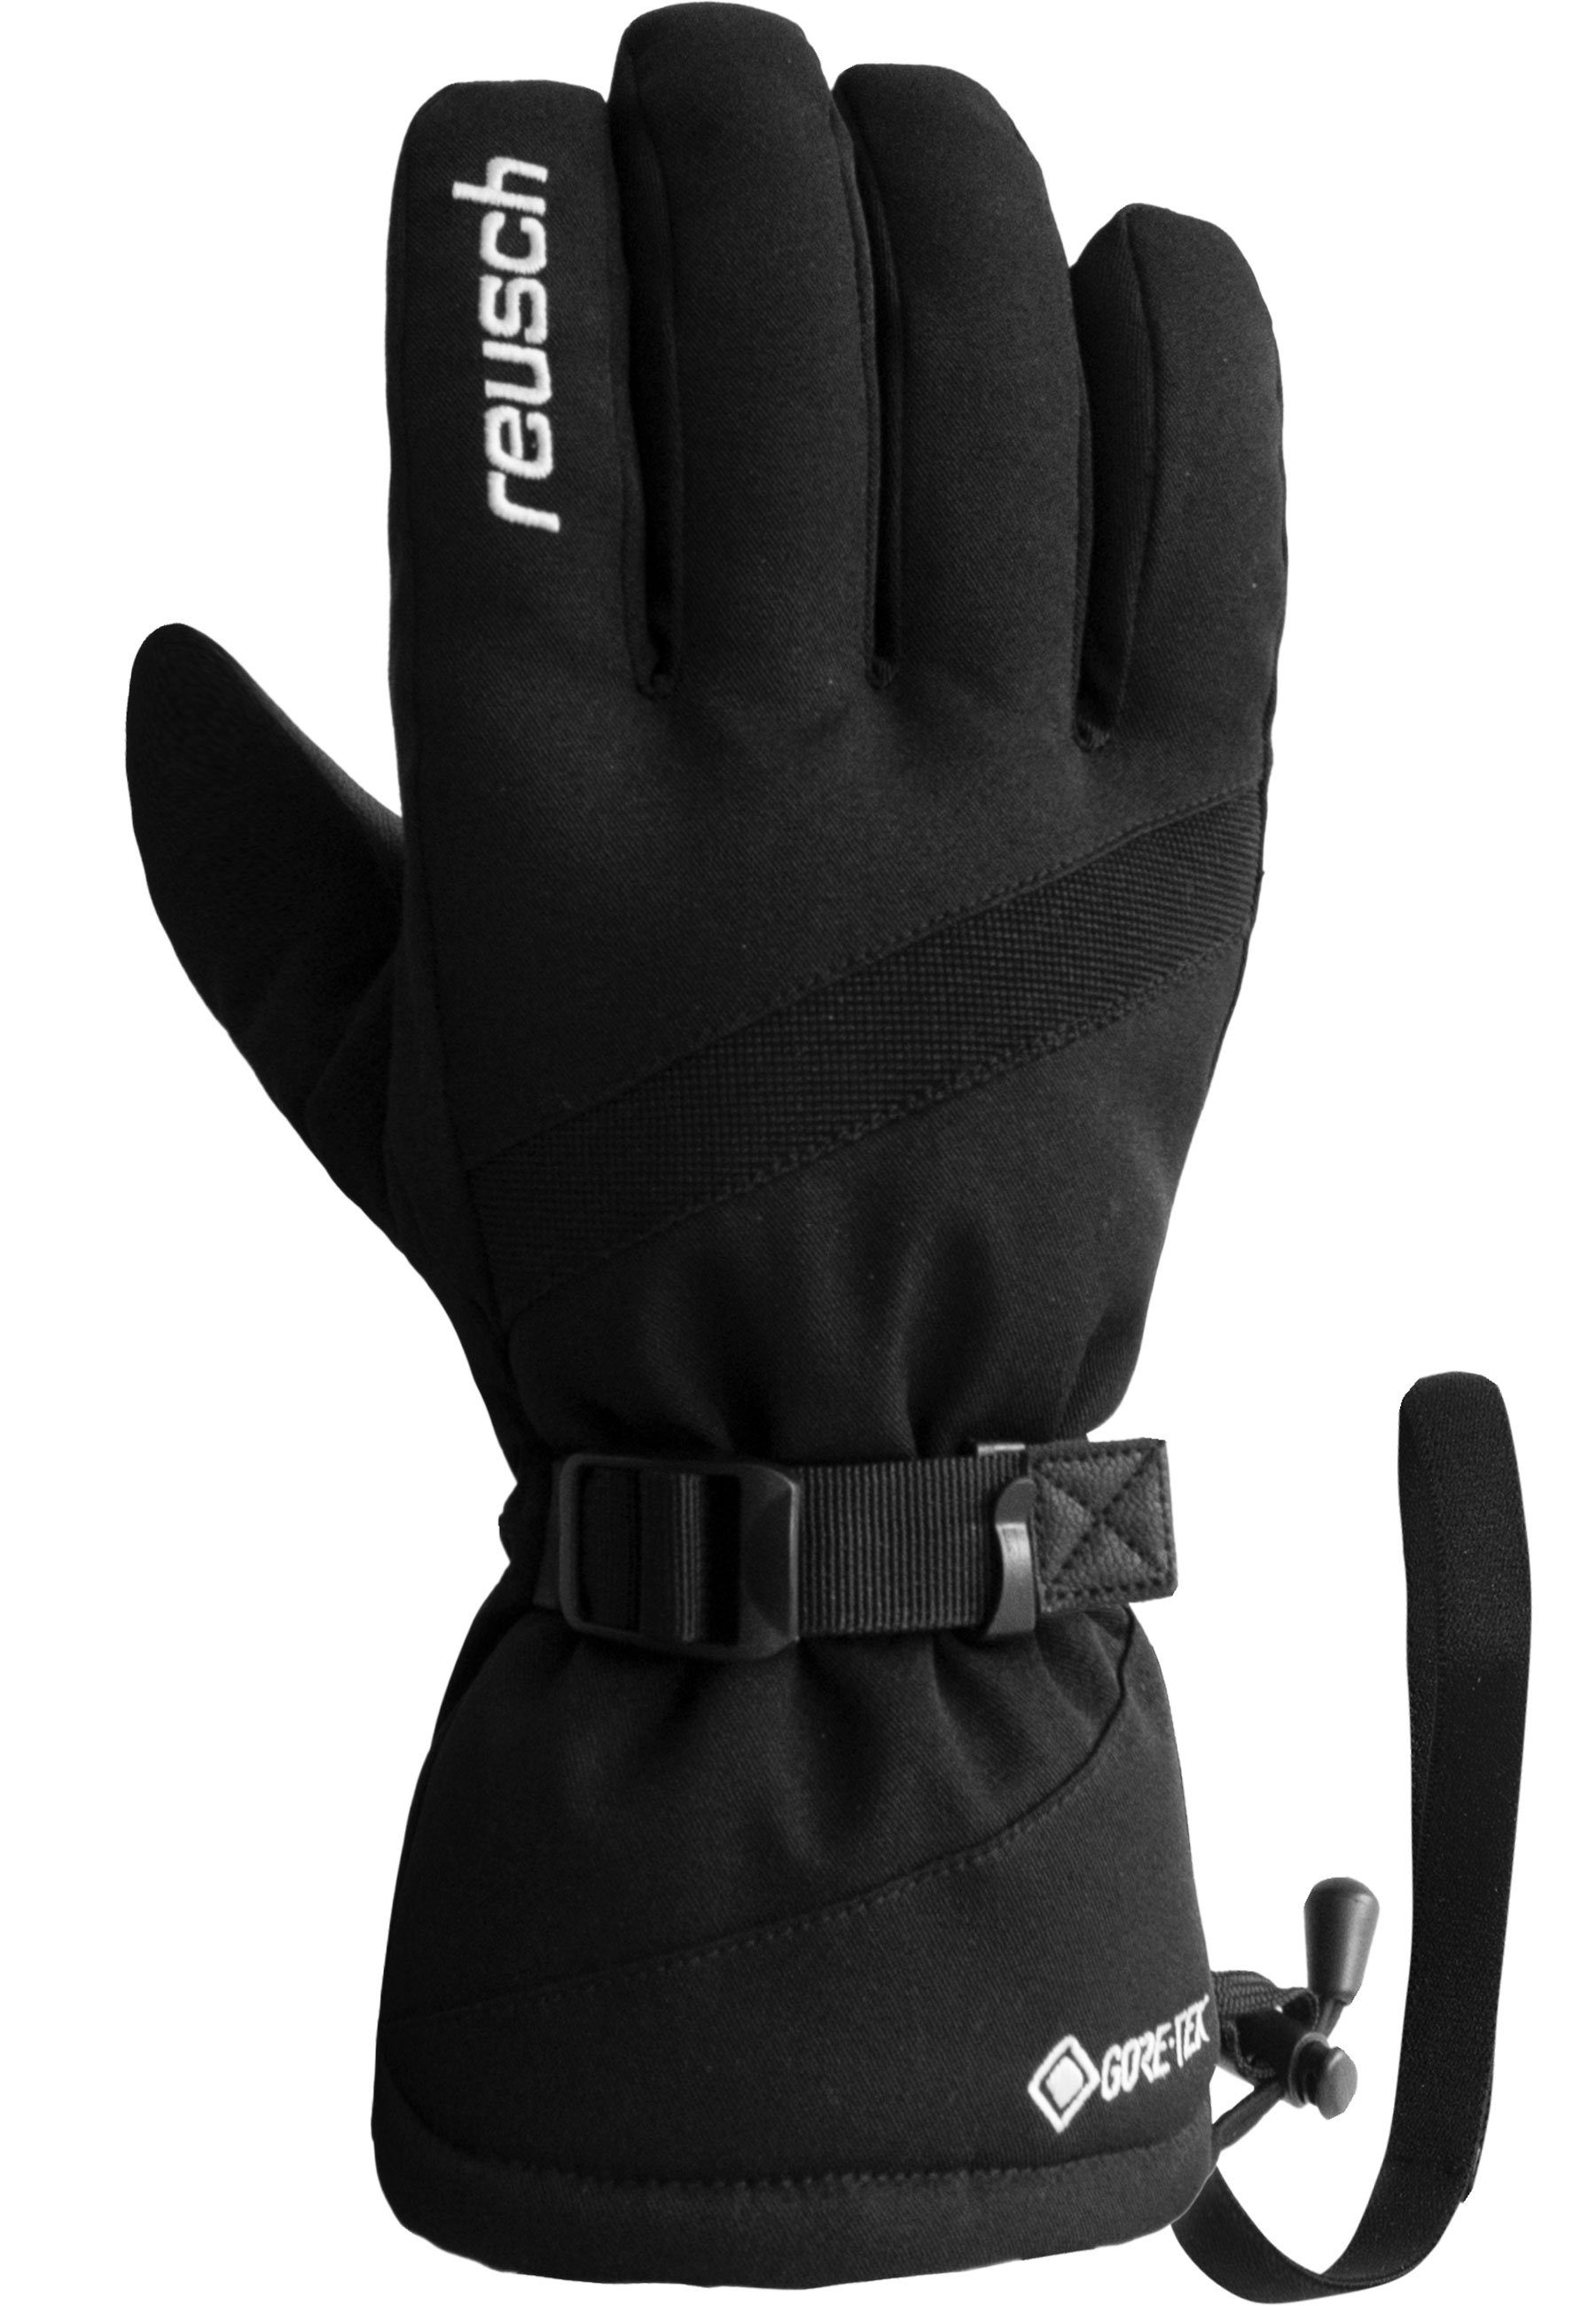 Reusch Skihandschuhe Winter Glove atmungsaktivem Material GORE-TEX Warm wasserdichtem und aus